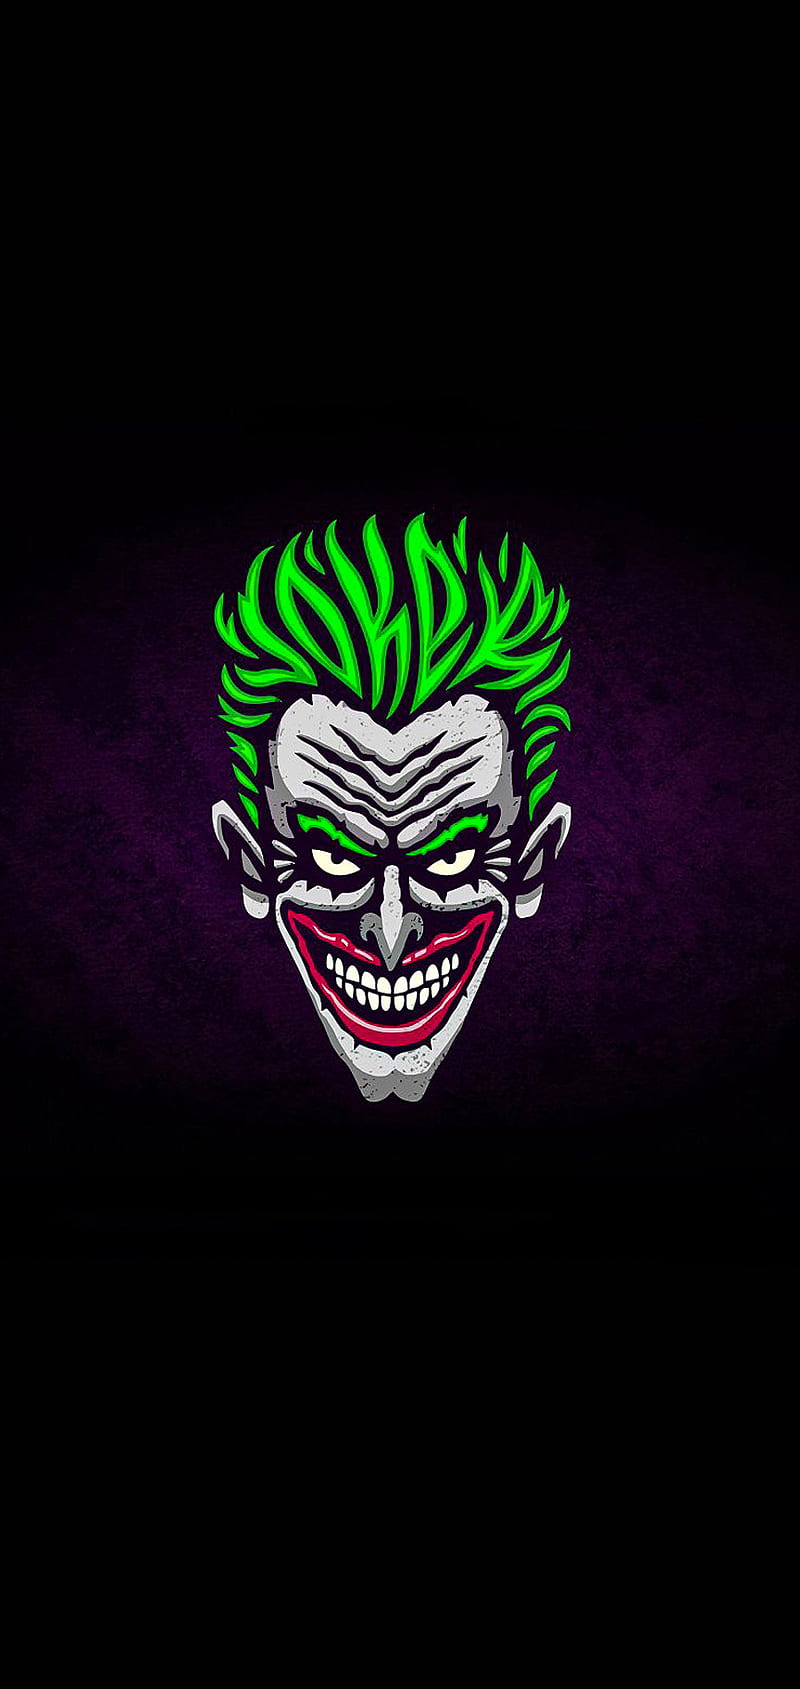 Joker 2019 Protest Joaquin Phoenix Phone iPhone 4K Wallpaper free Download